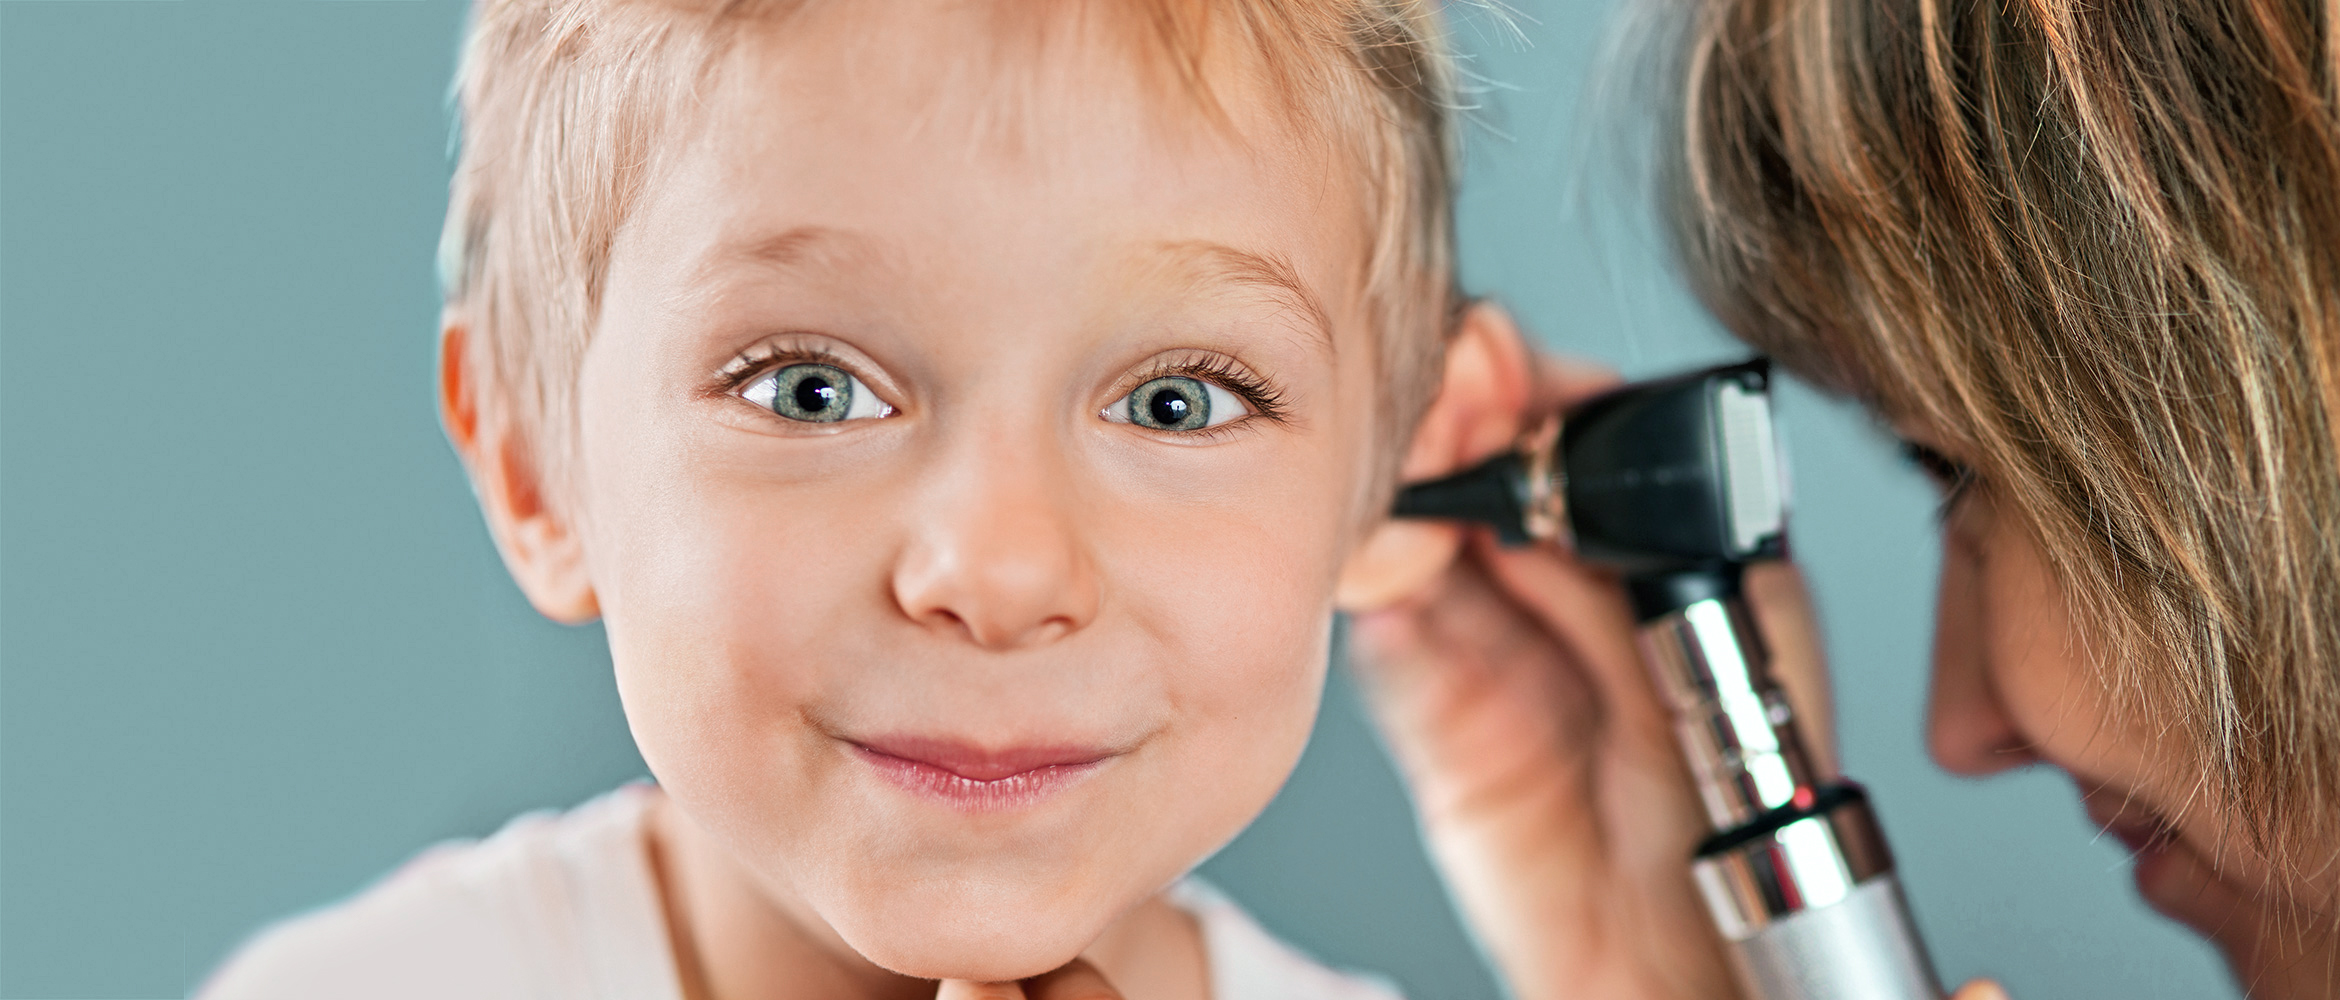 Ein kleiner Junge mit aufmerksamem Blick erhält eine Ohrenuntersuchung durch eine Fachkraft, was die Bedeutung regelmäßiger Hörprüfungen von Kindesbeinen an unterstreicht.